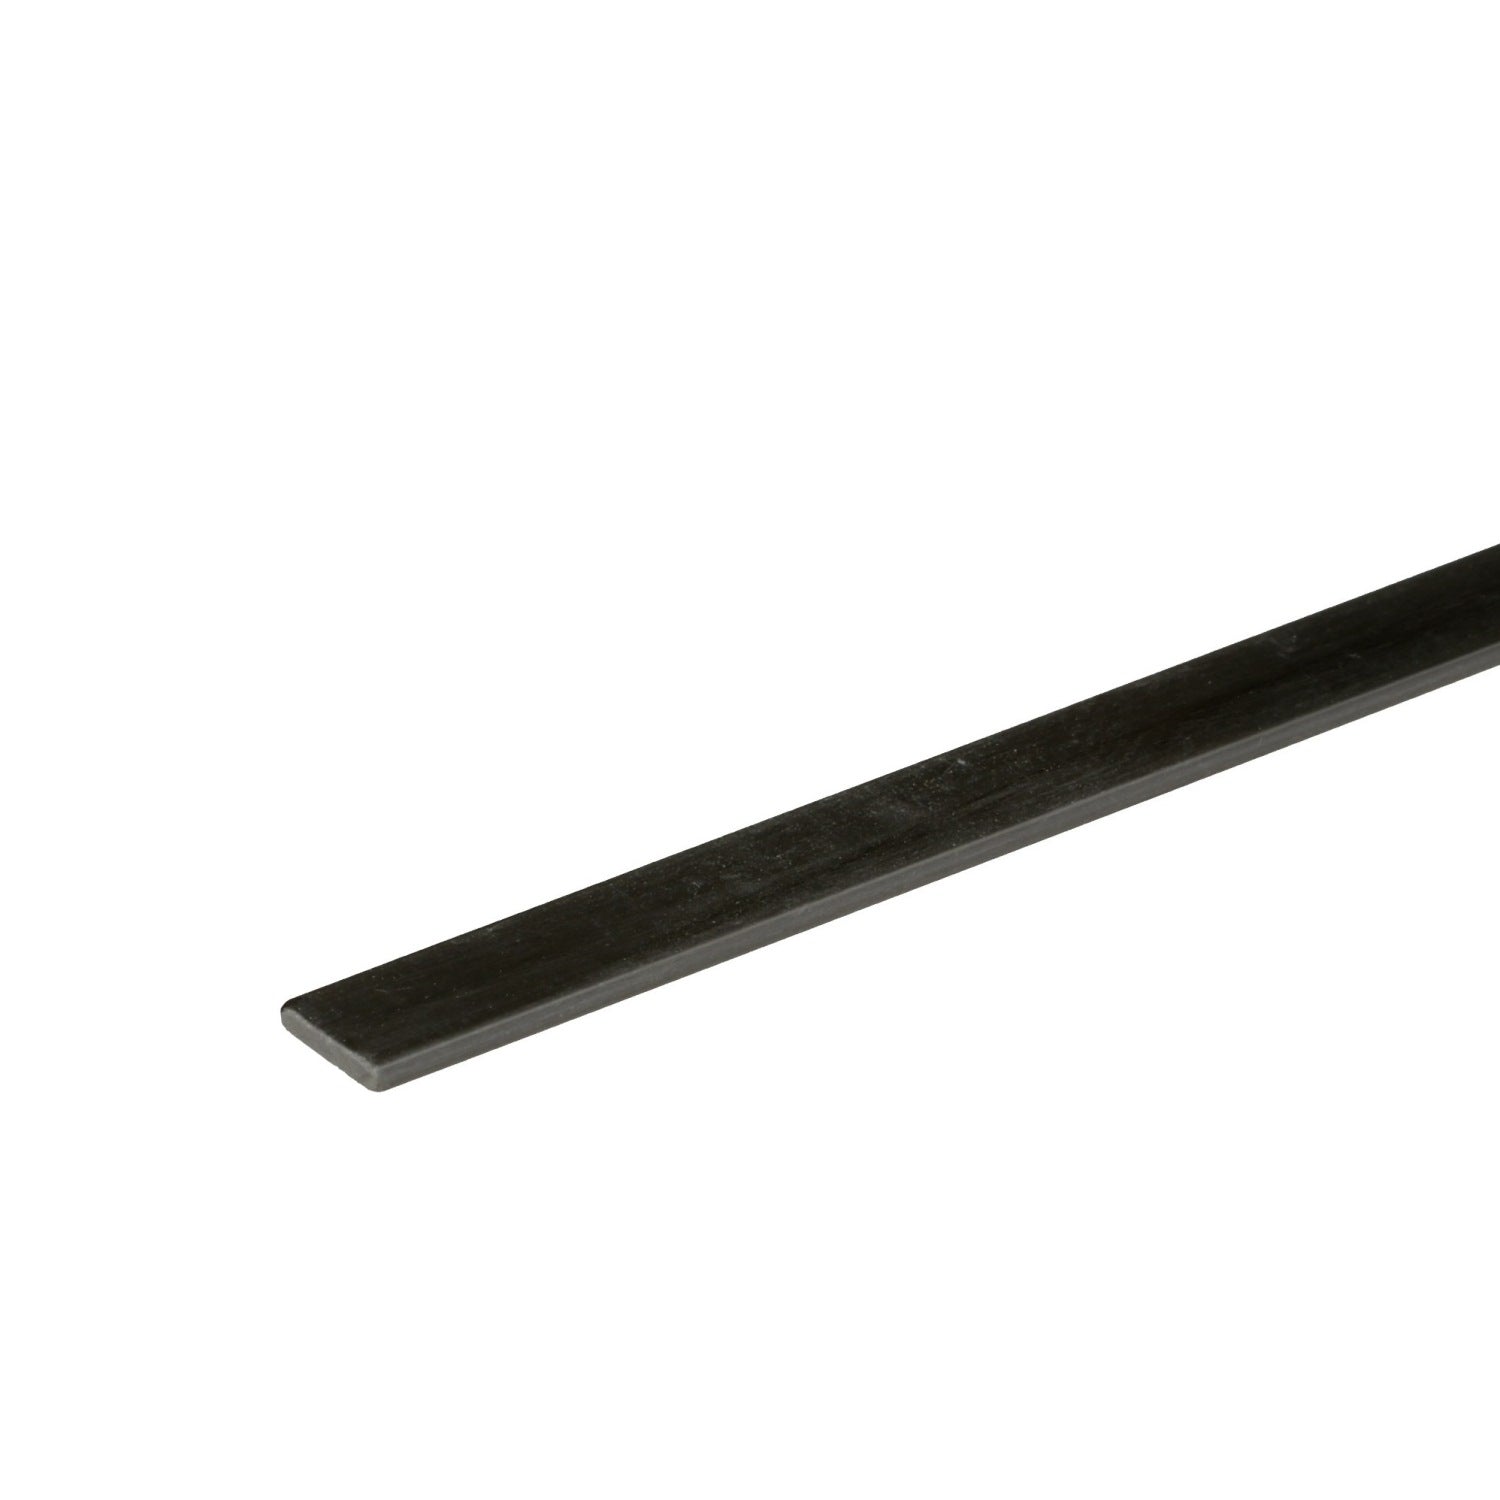 Carbon Fibre Flat Bar Strip